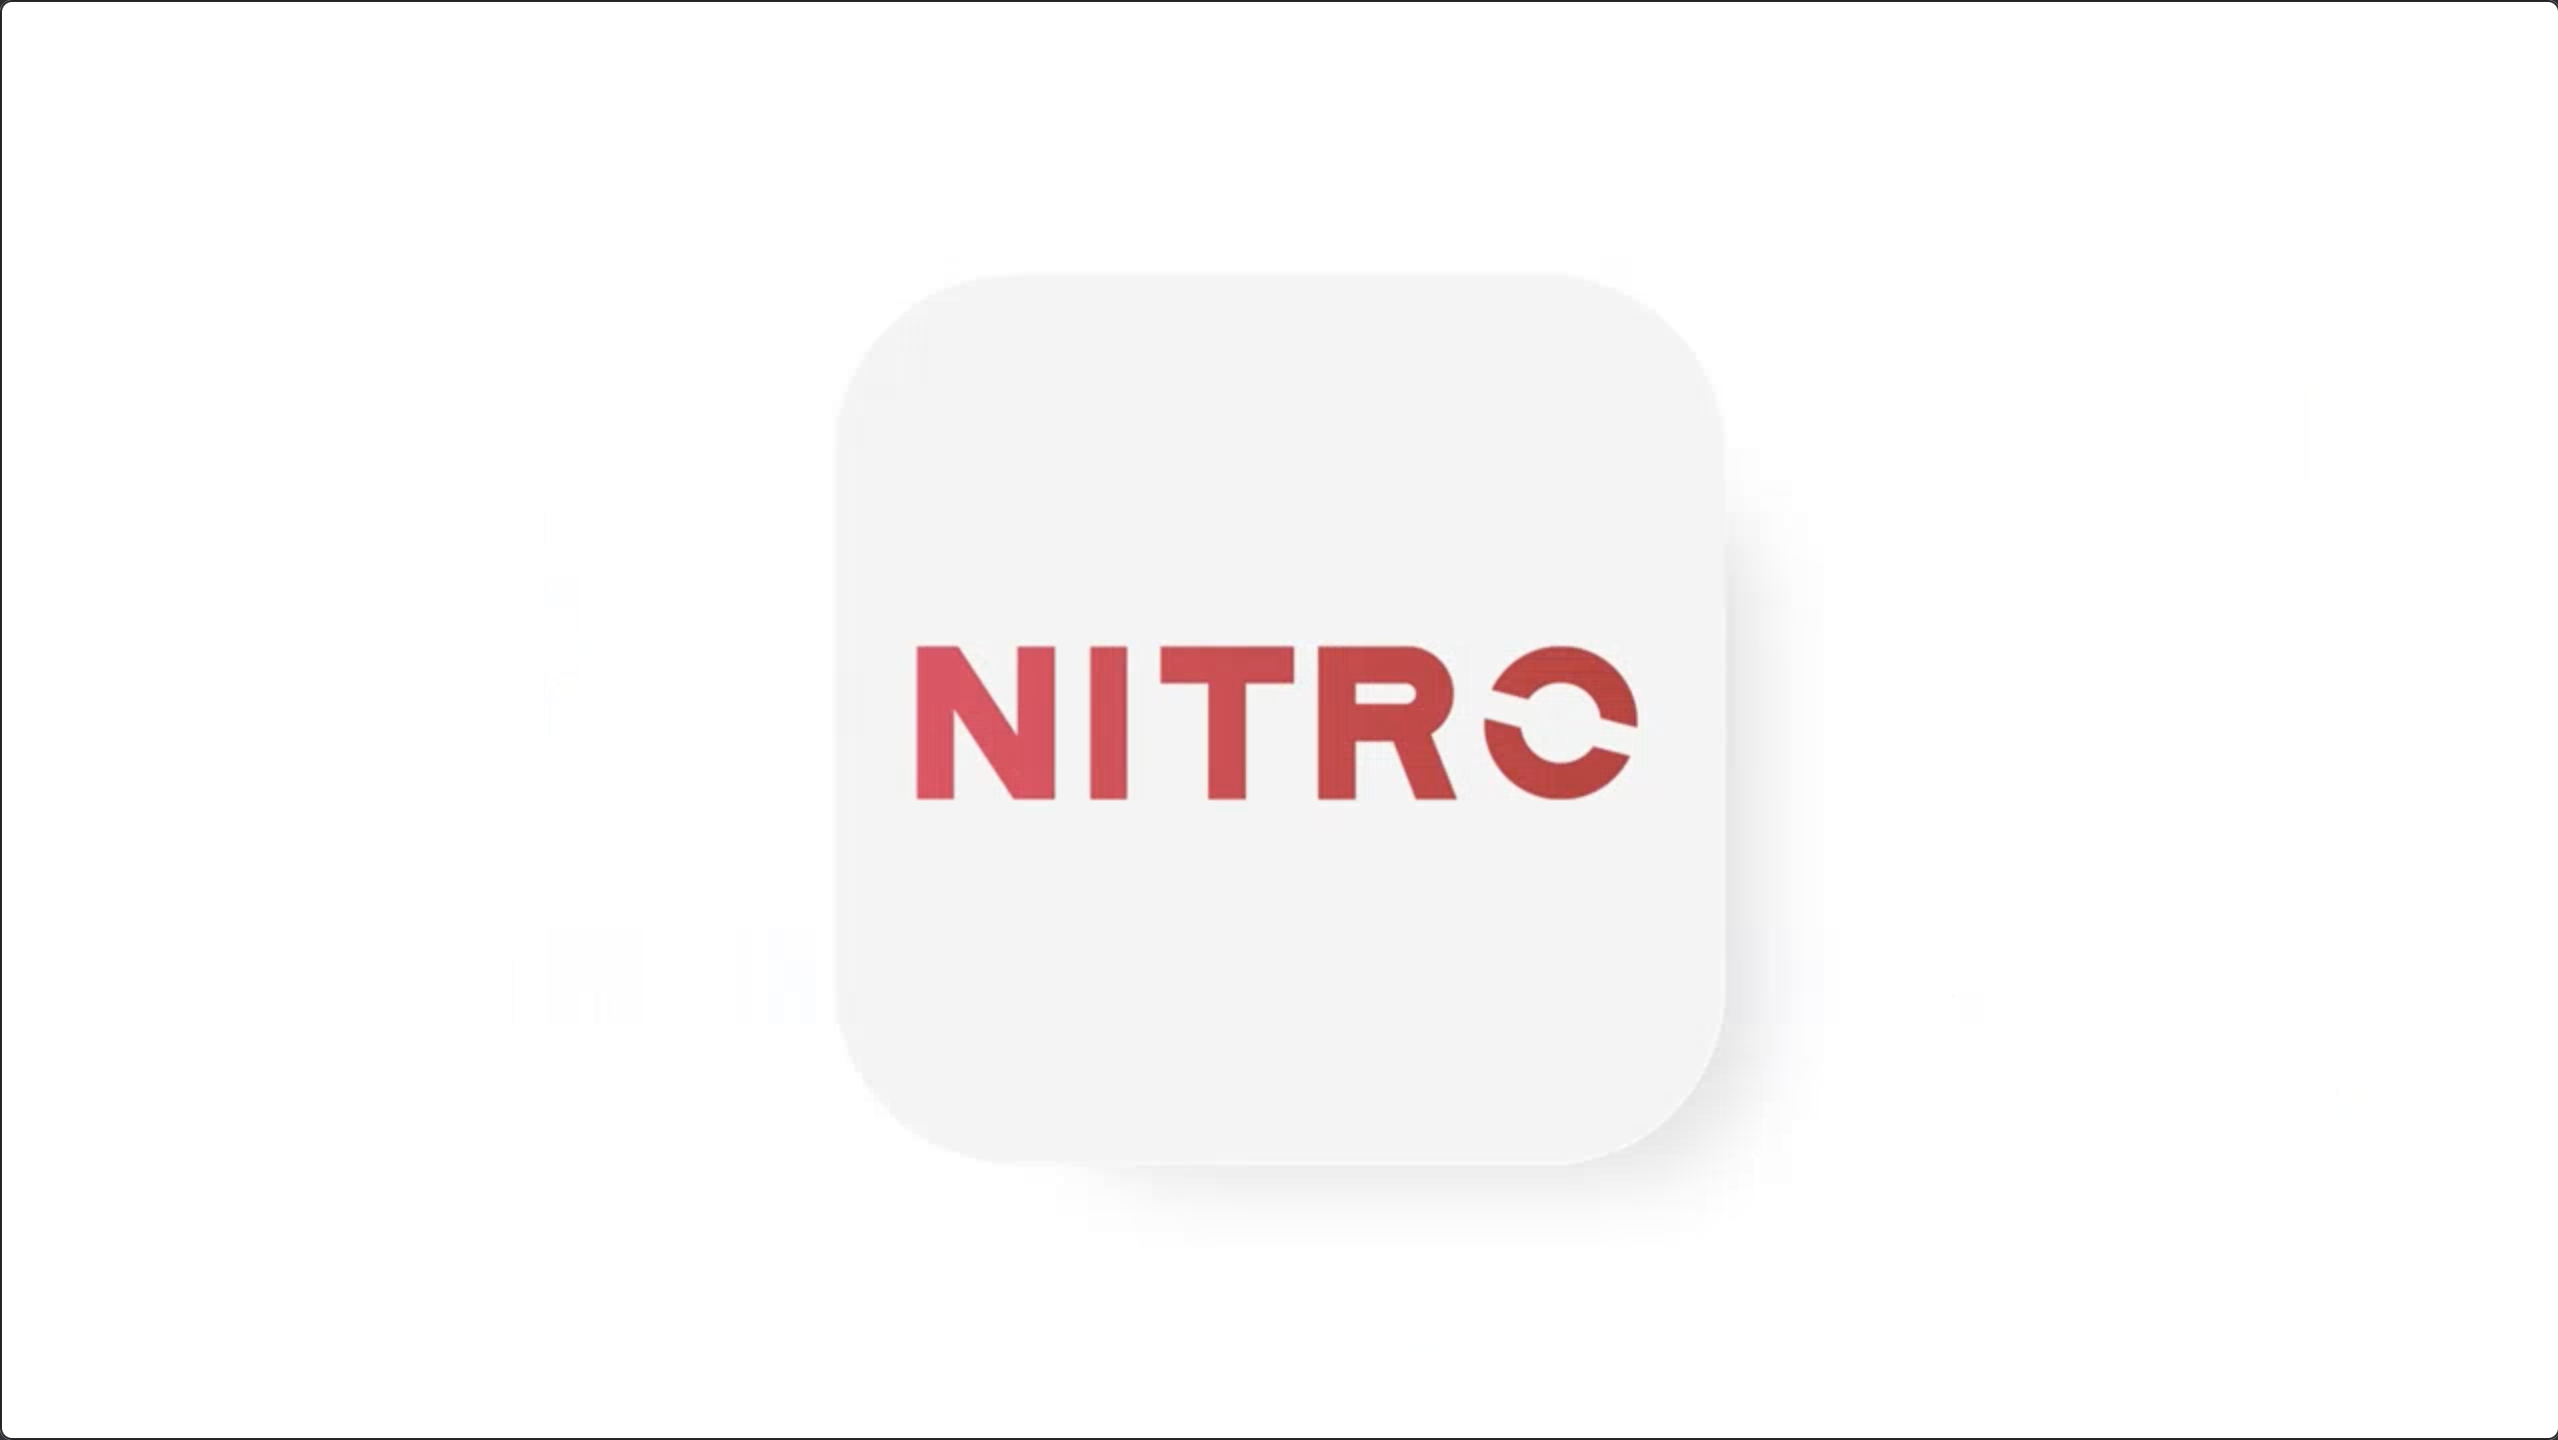 Nitropc  Proyecto Numéricco Digital Boutique Company